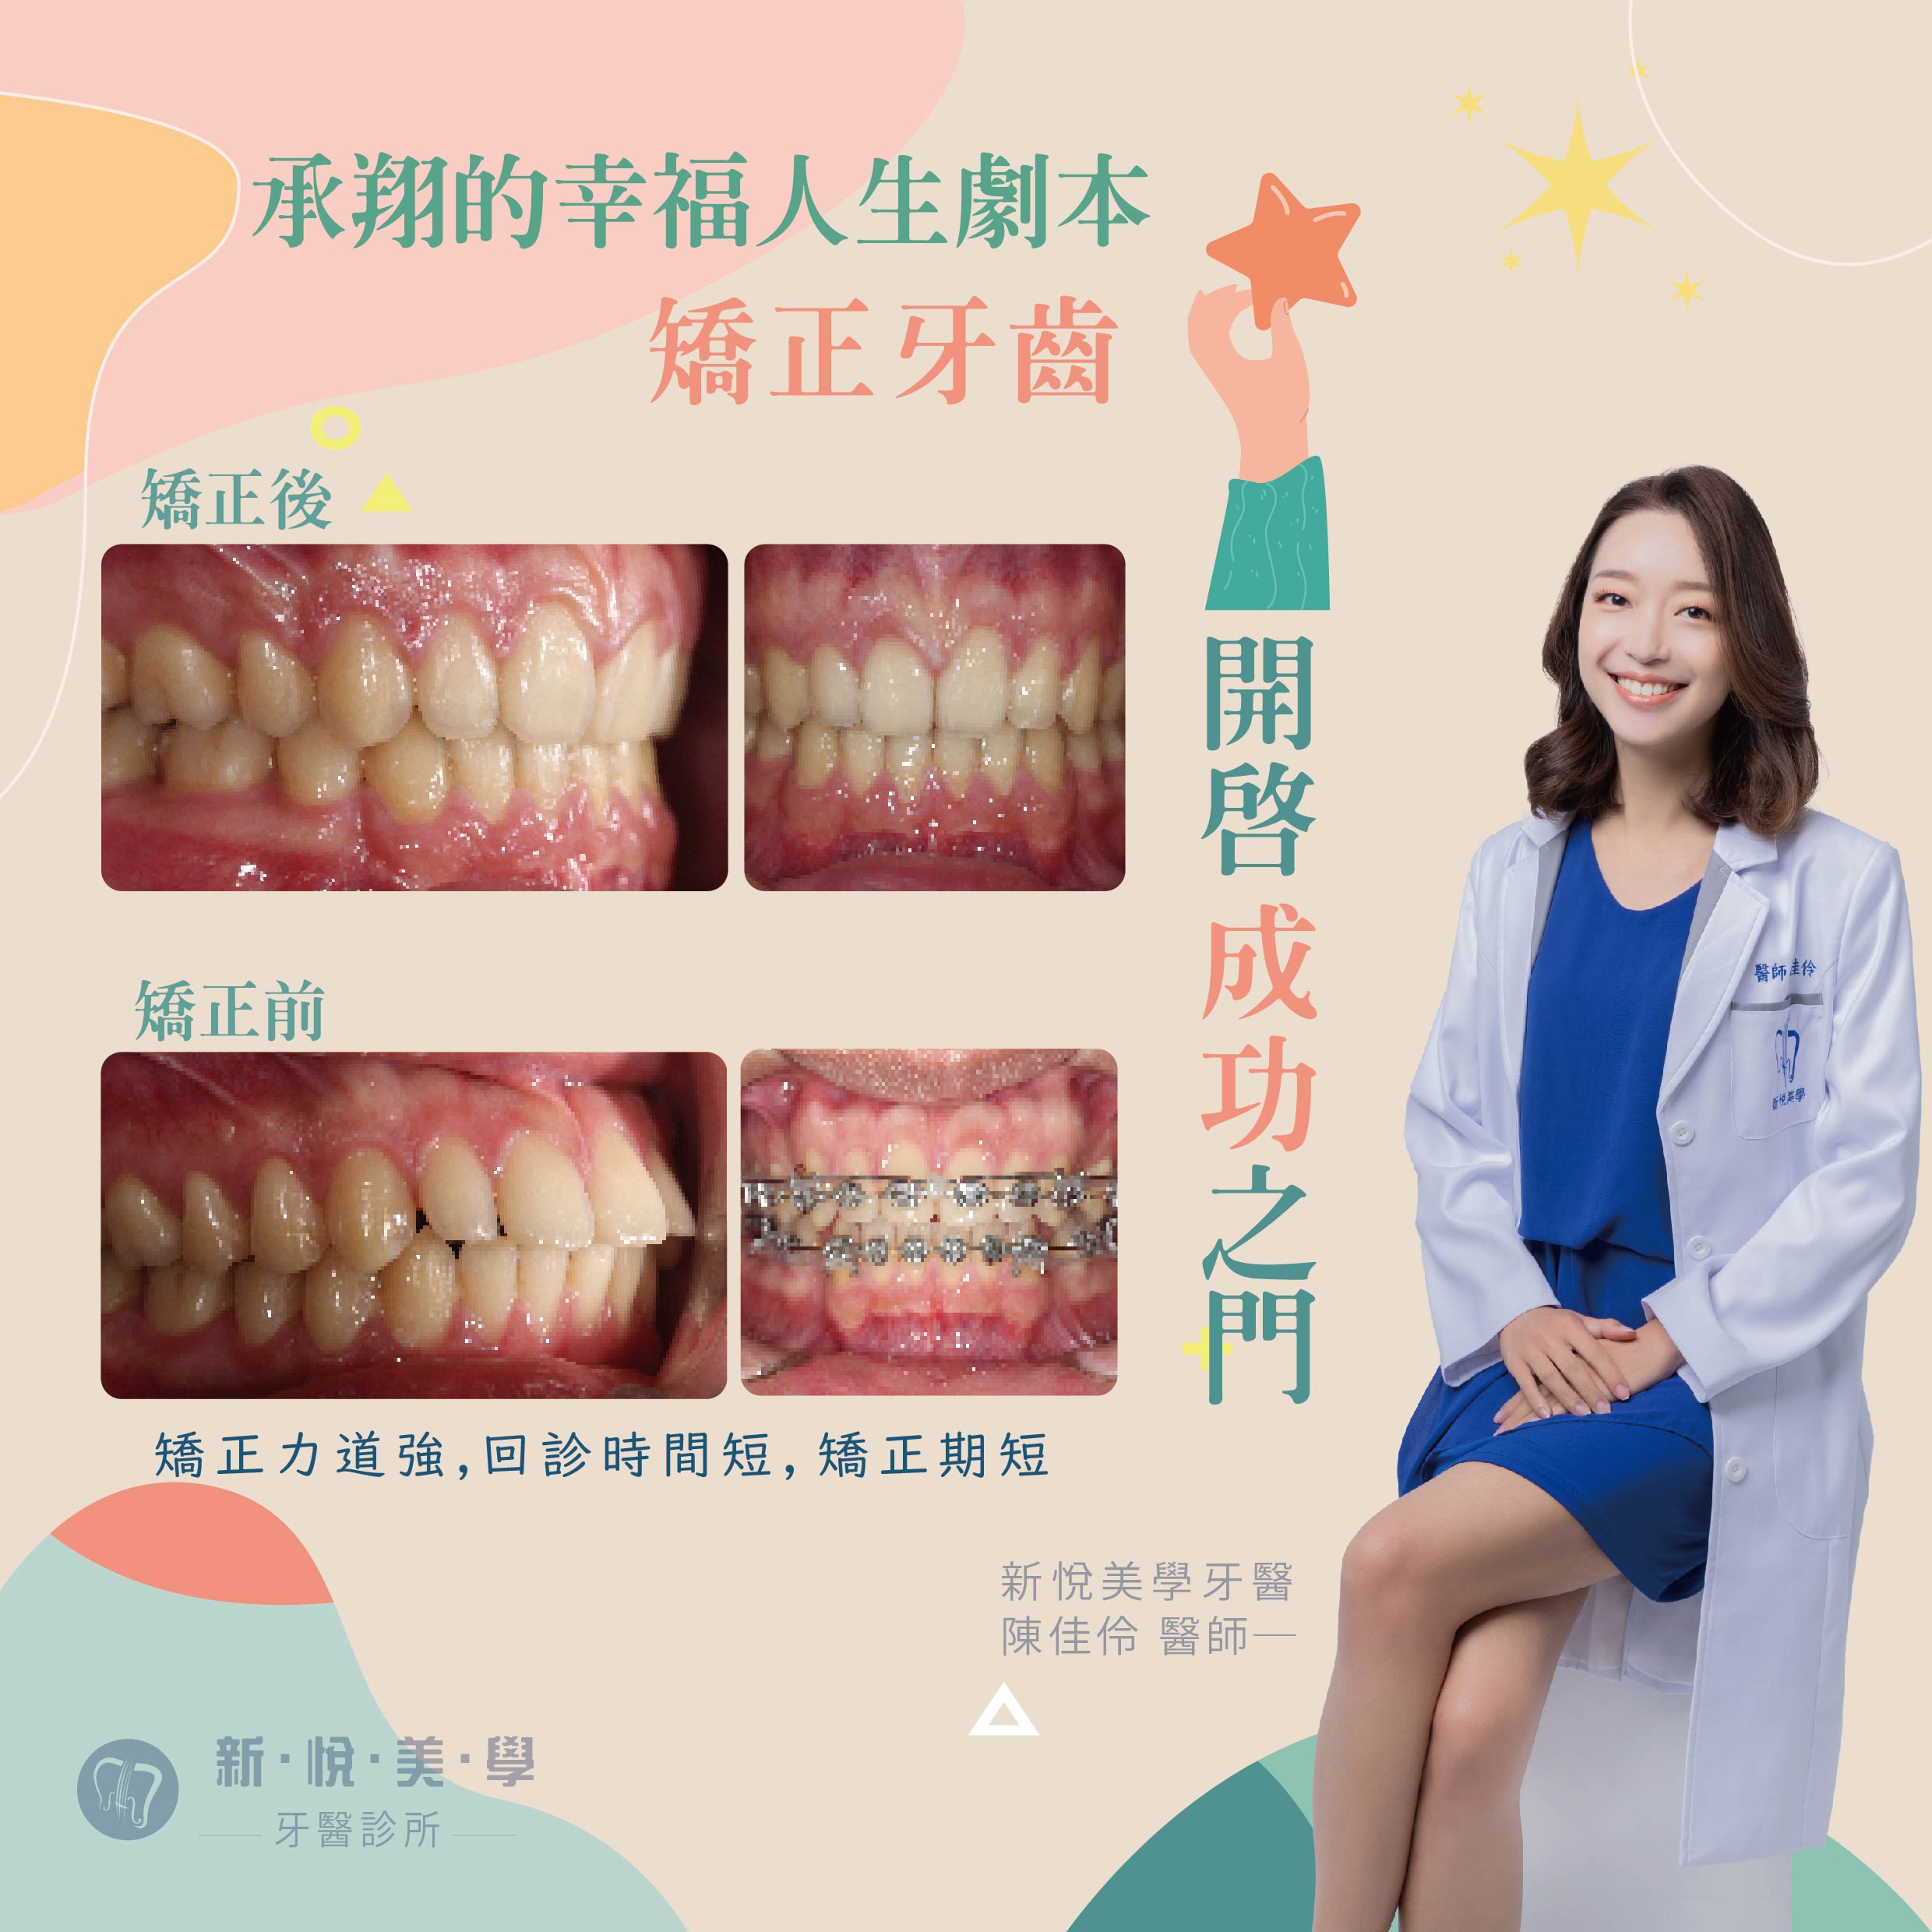 新悅美學牙醫診所的案例分享圖片